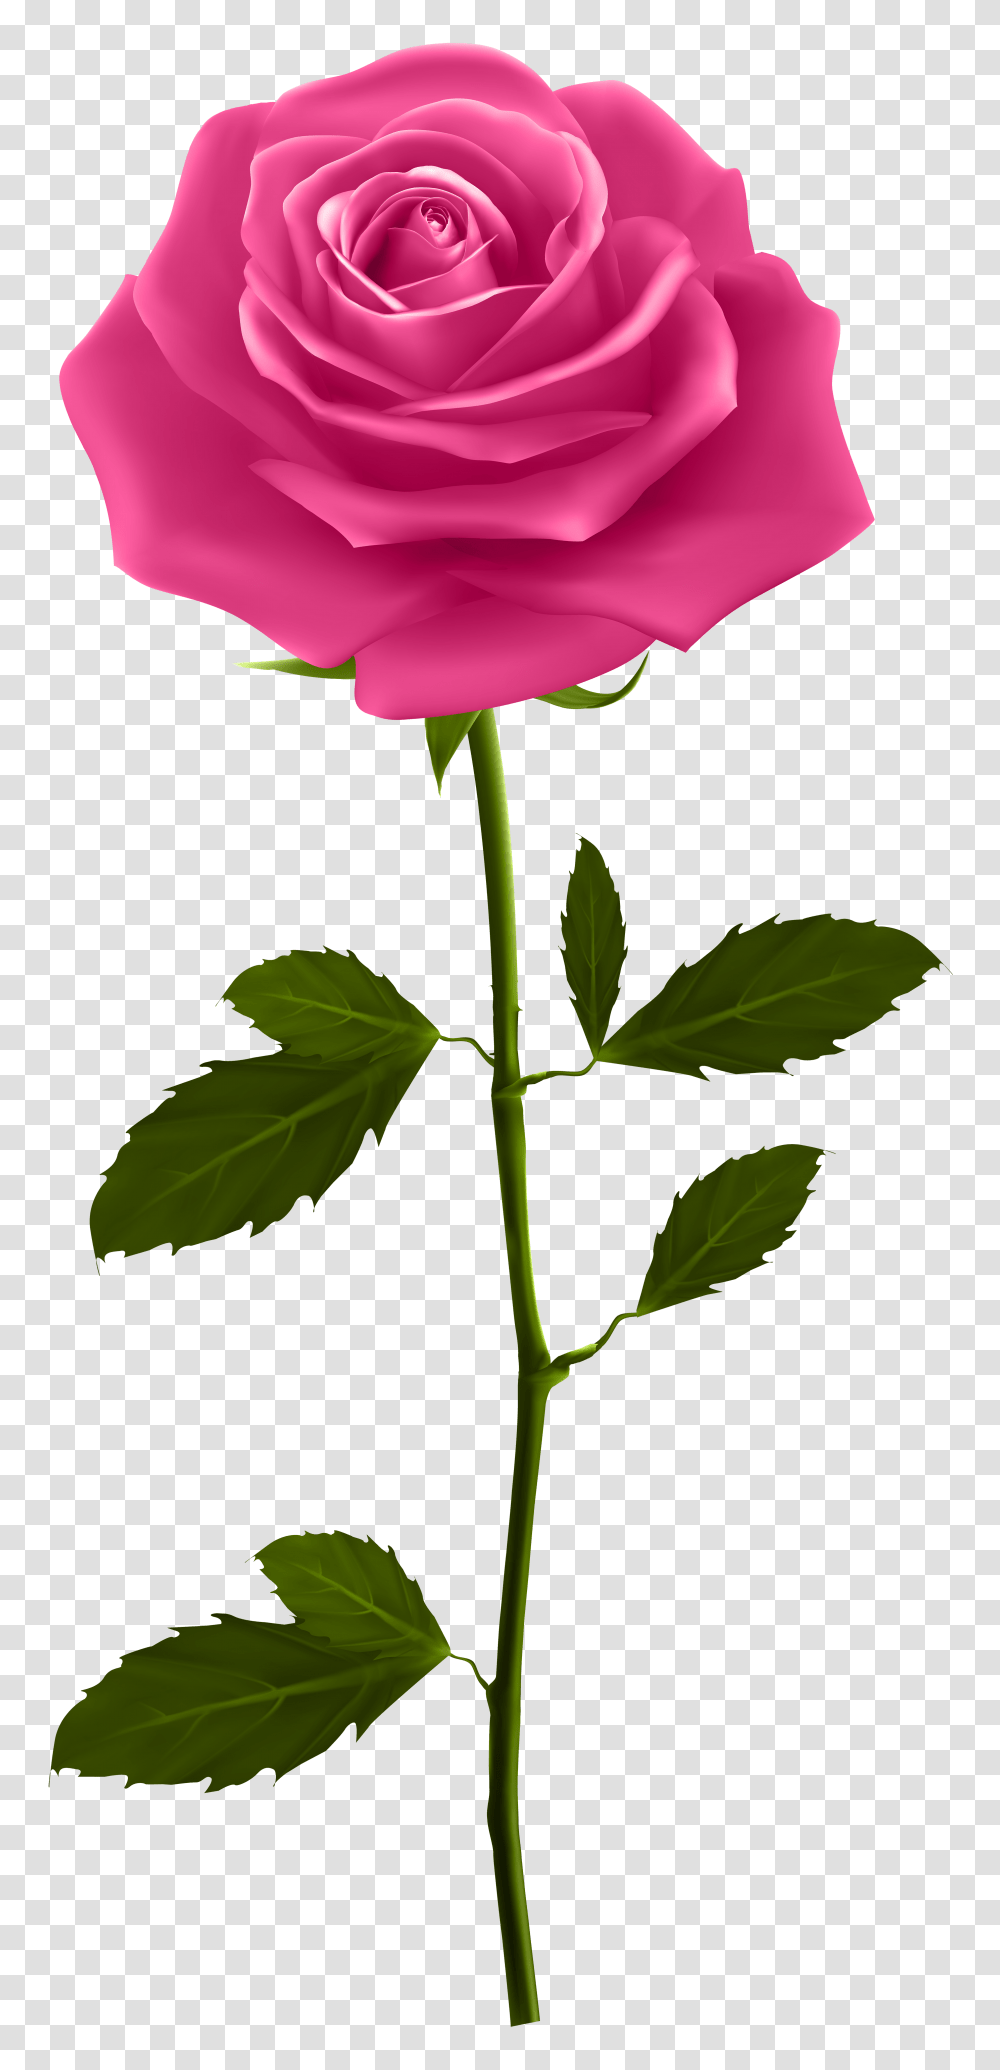 Pink Rose With Stem Clip Art, Flower, Plant, Blossom, Petal Transparent Png